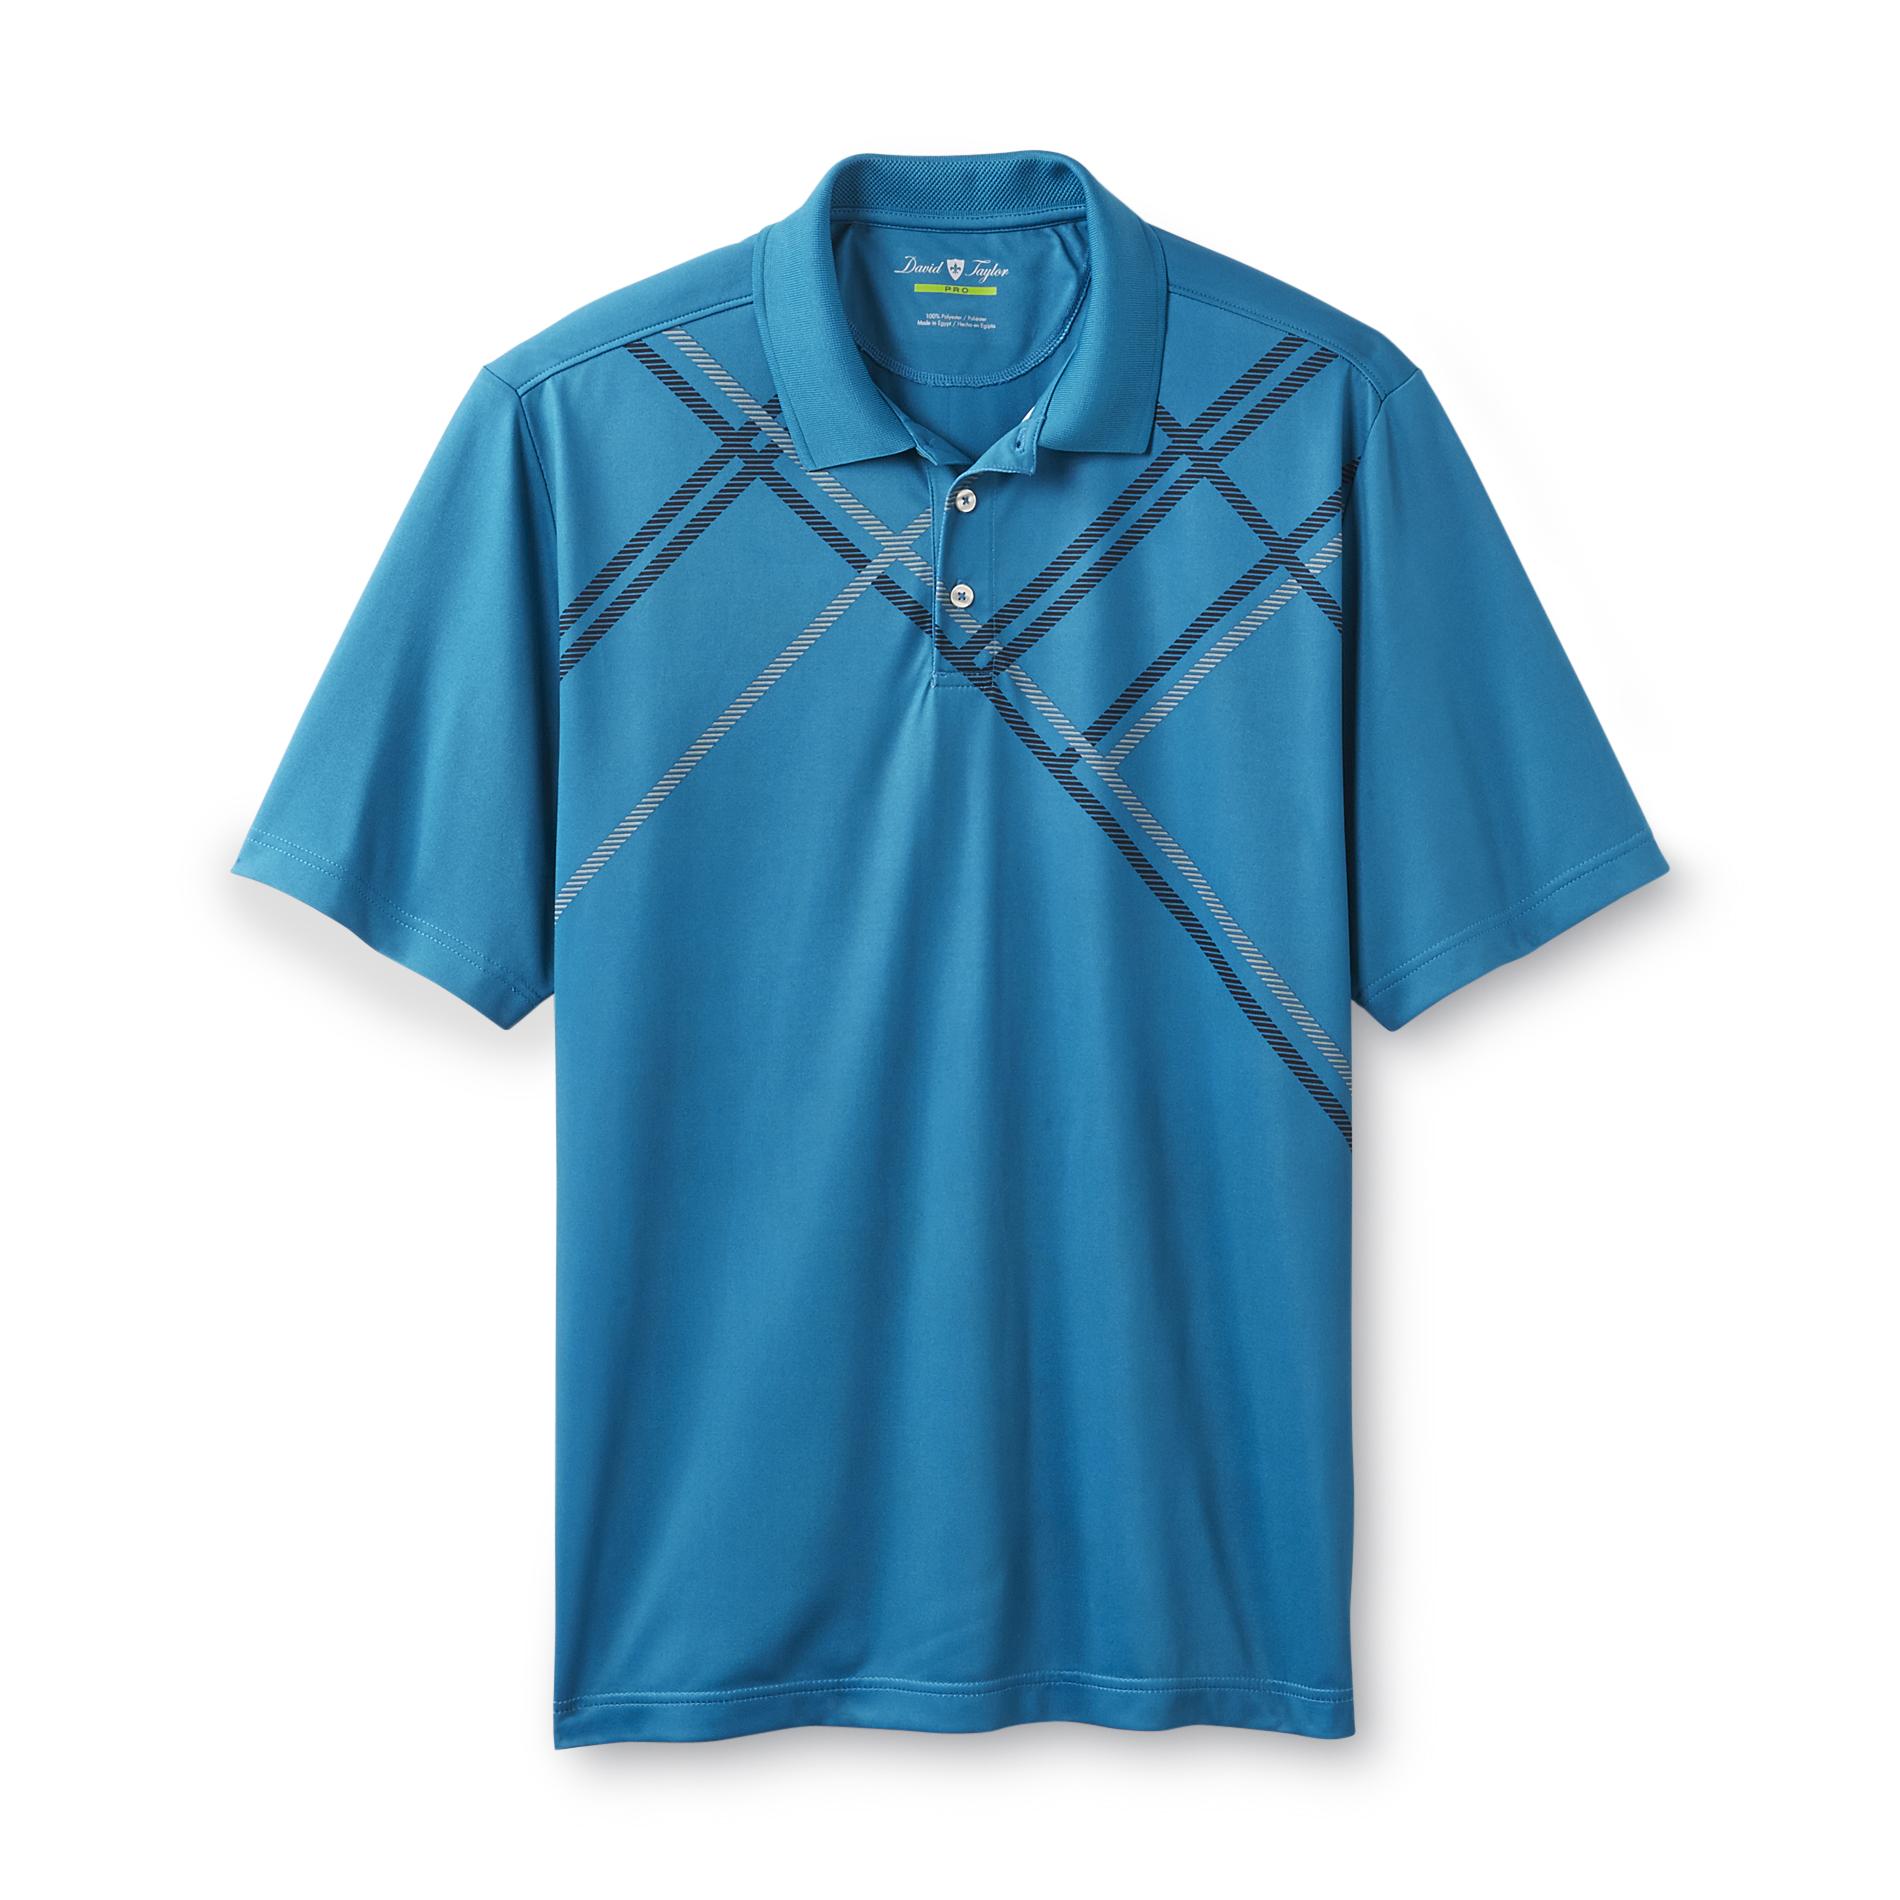 David Taylor Collection Men's Jersey Polo Shirt - Argyle